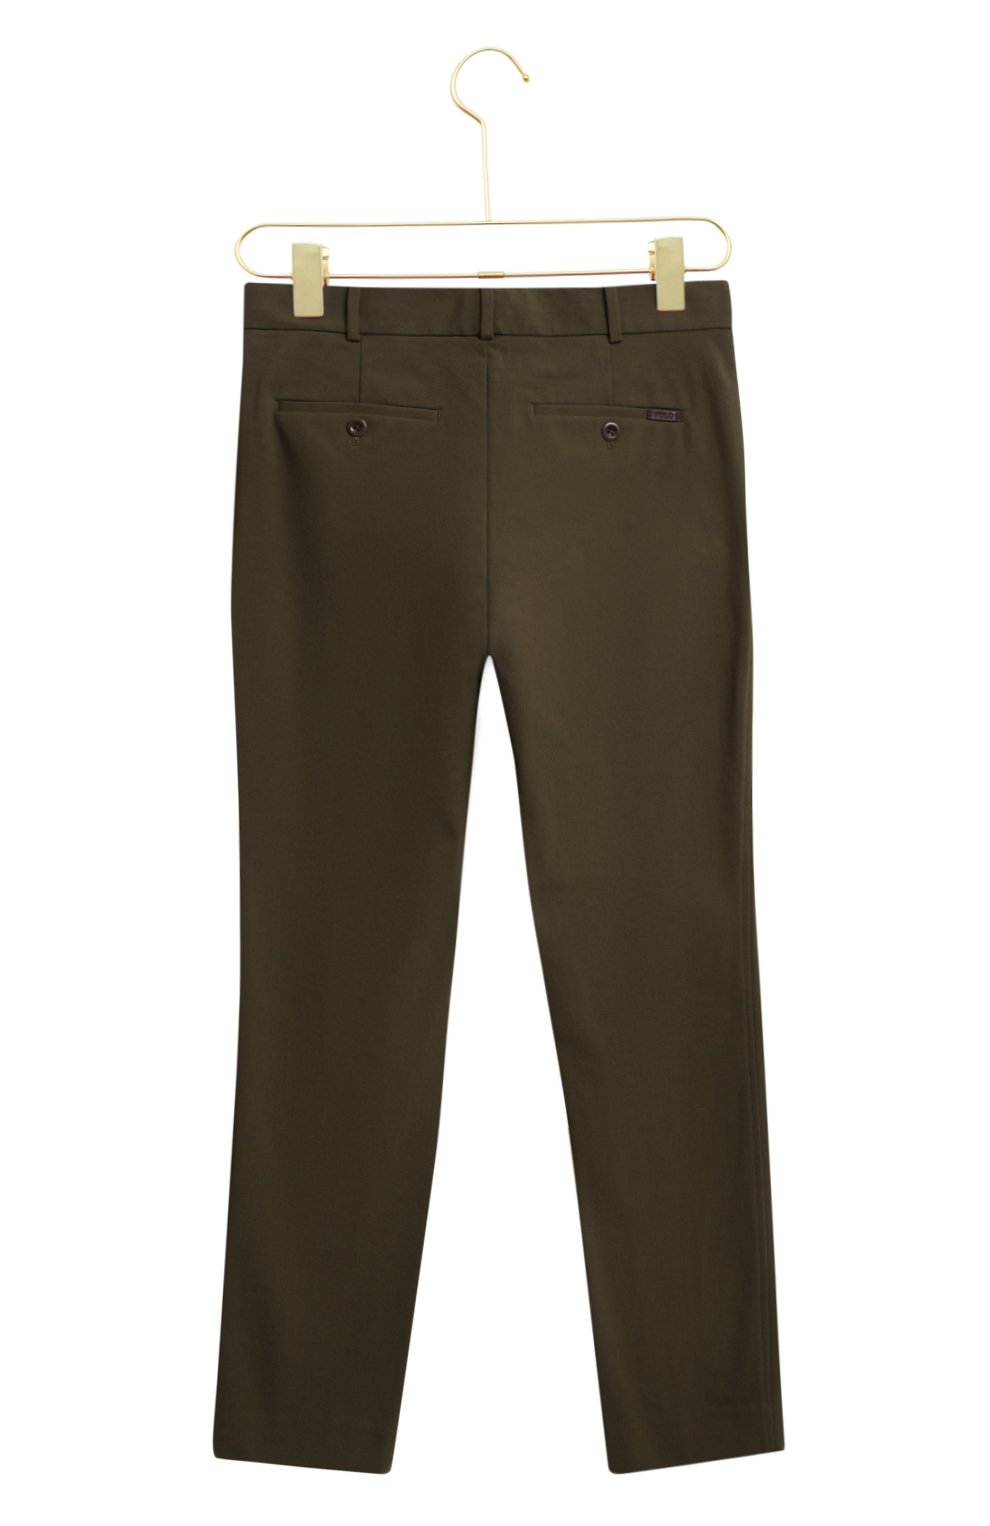 Хлопковые брюки | Polo Ralph Lauren | Хаки - 2